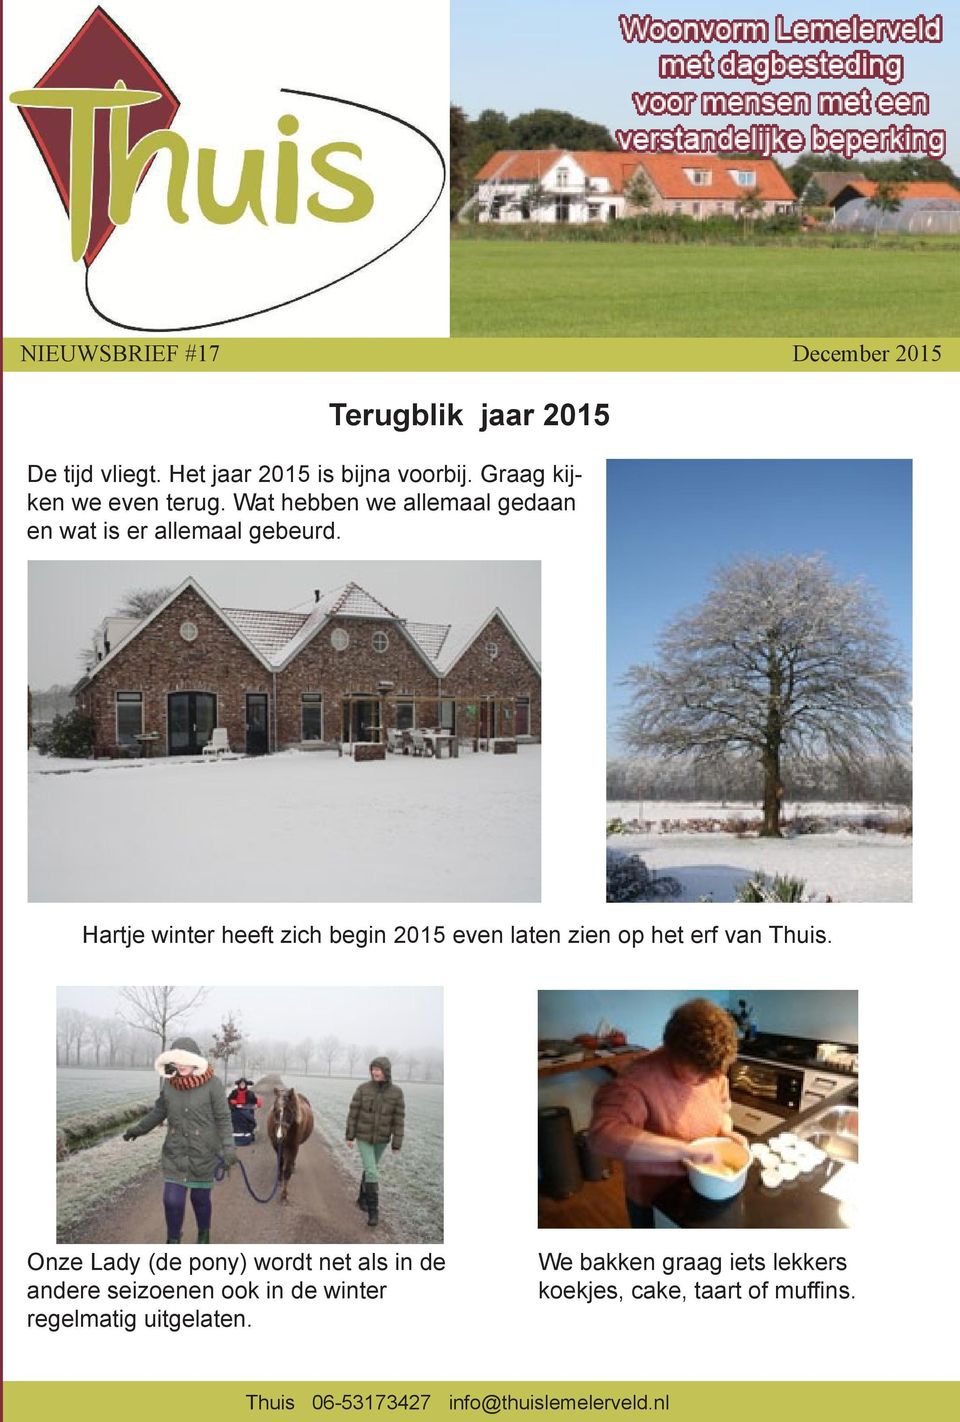 Hartje winter heeft zich begin 2015 even laten zien op het erf van Thuis.